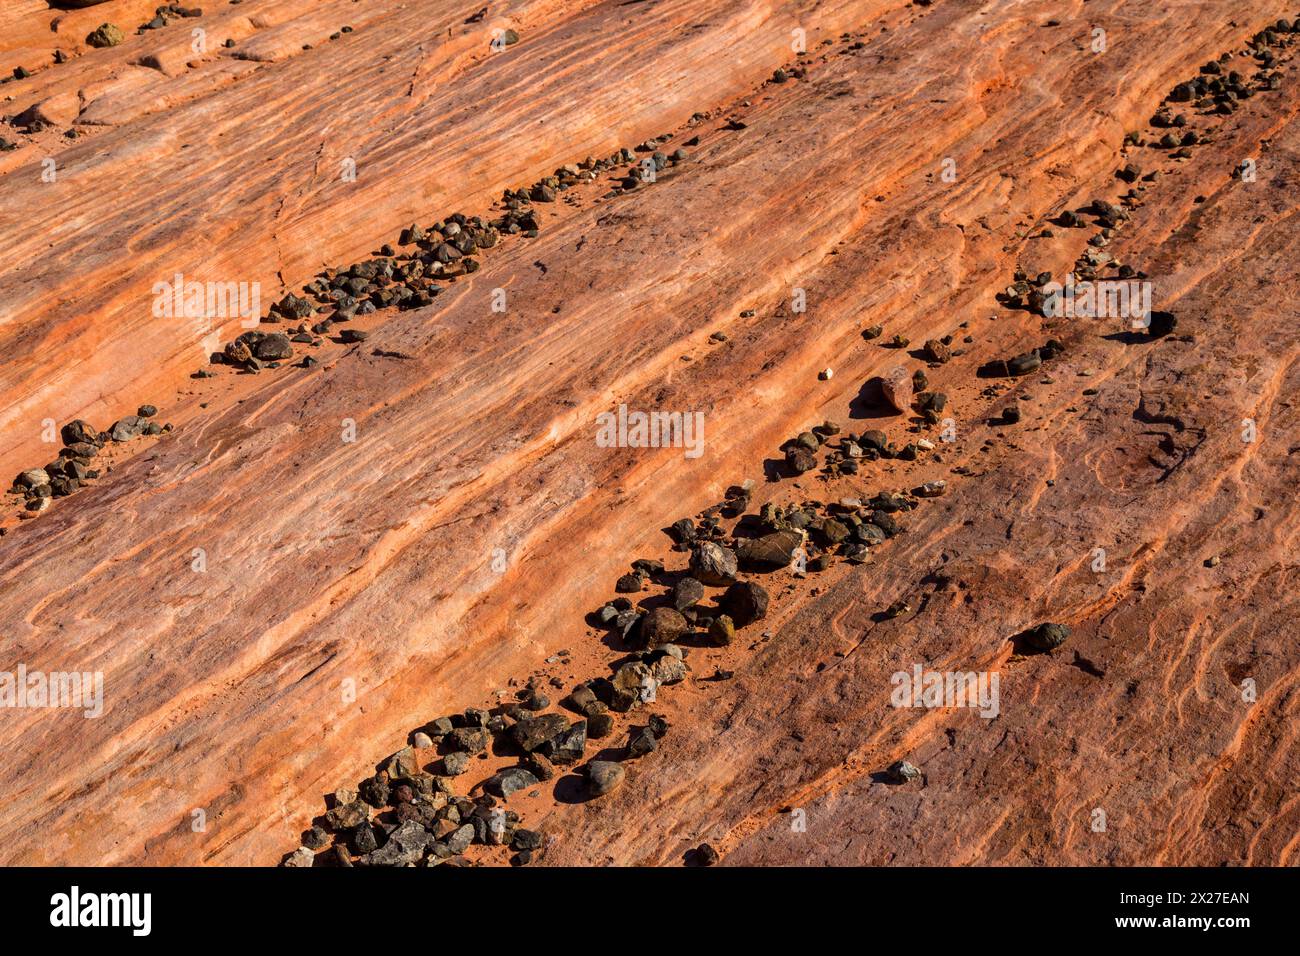 La Valle del Fuoco, Nevada. L'onda di fuoco--striature di pietra arenaria rossa. Foto Stock